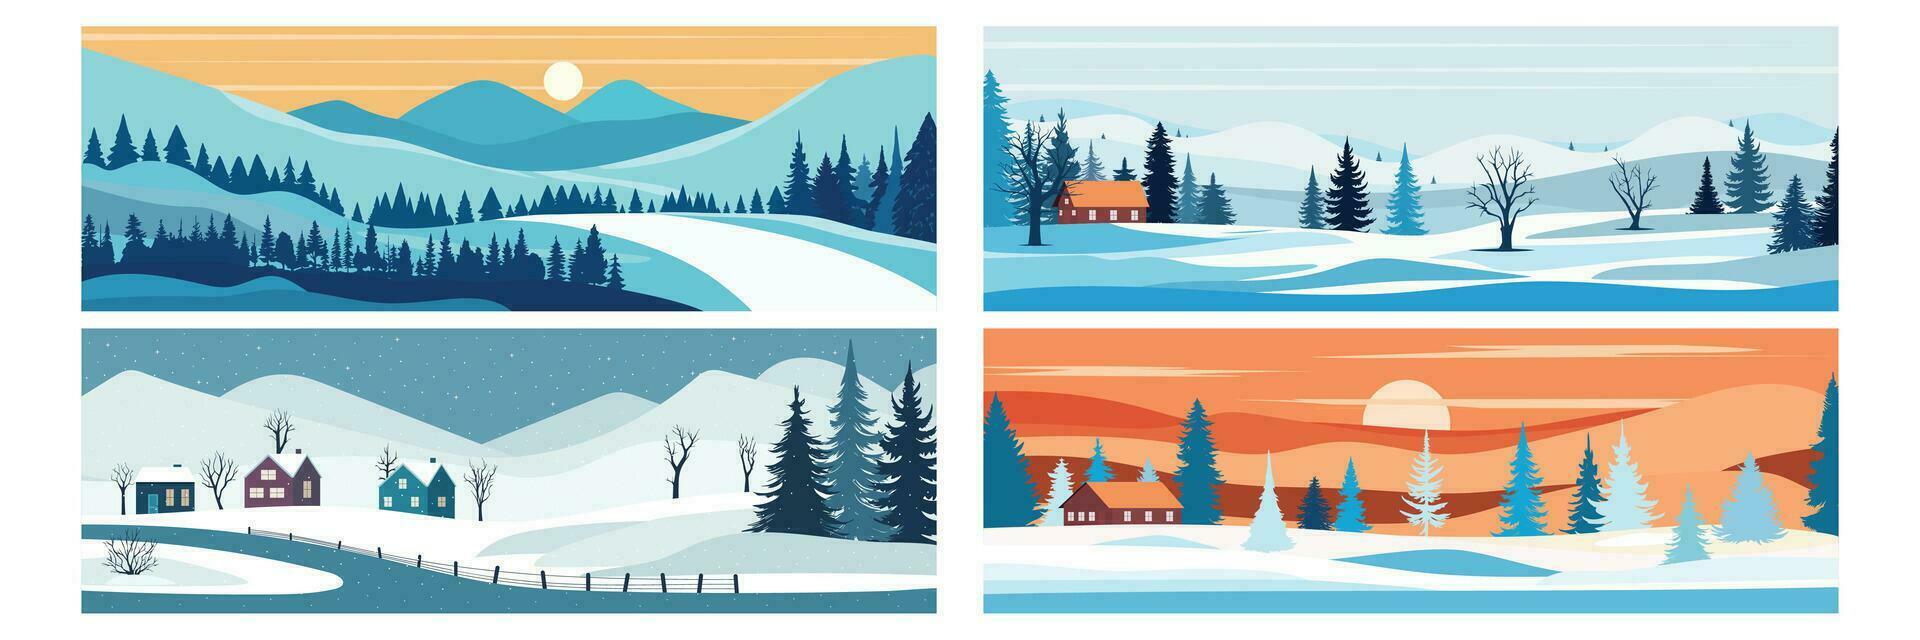 einstellen von Winter Hintergrund Banner. Winter Landschaft mit Berg, Kiefer Bäume, Hügel und Haus. Vektor Illustration.